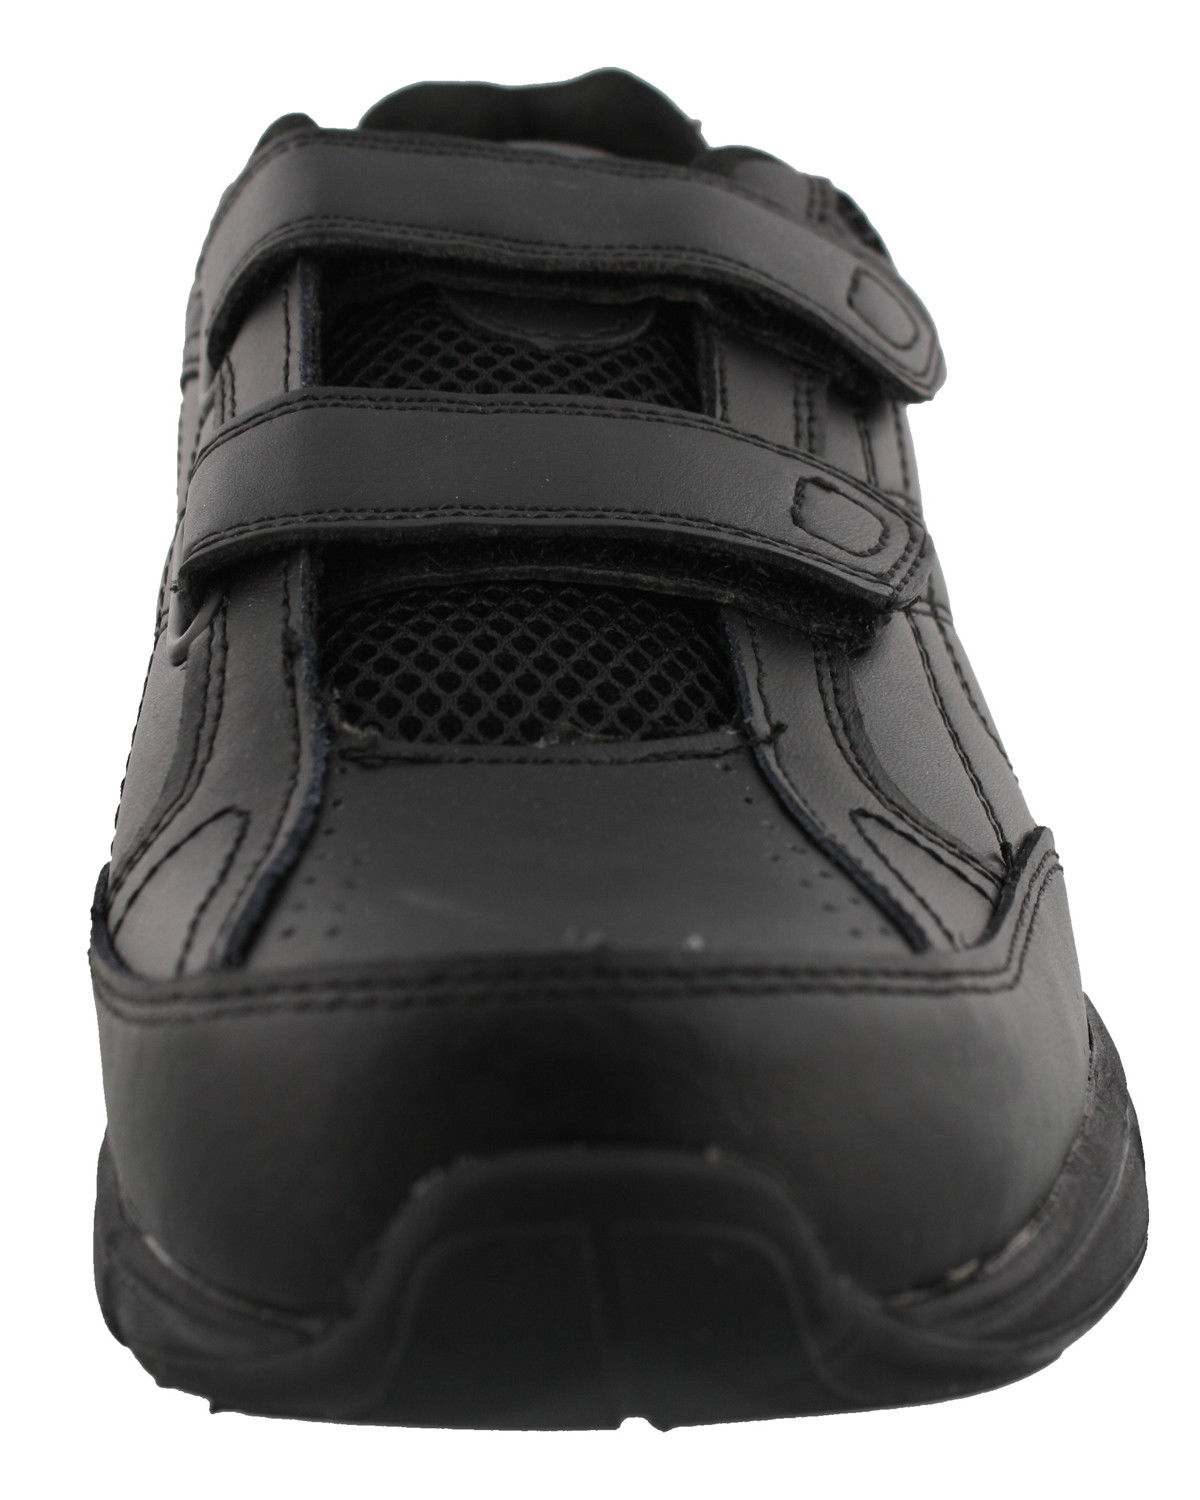 Dr. Scholl's Men's Brisk Sneakers, Wide Width - image 2 of 5